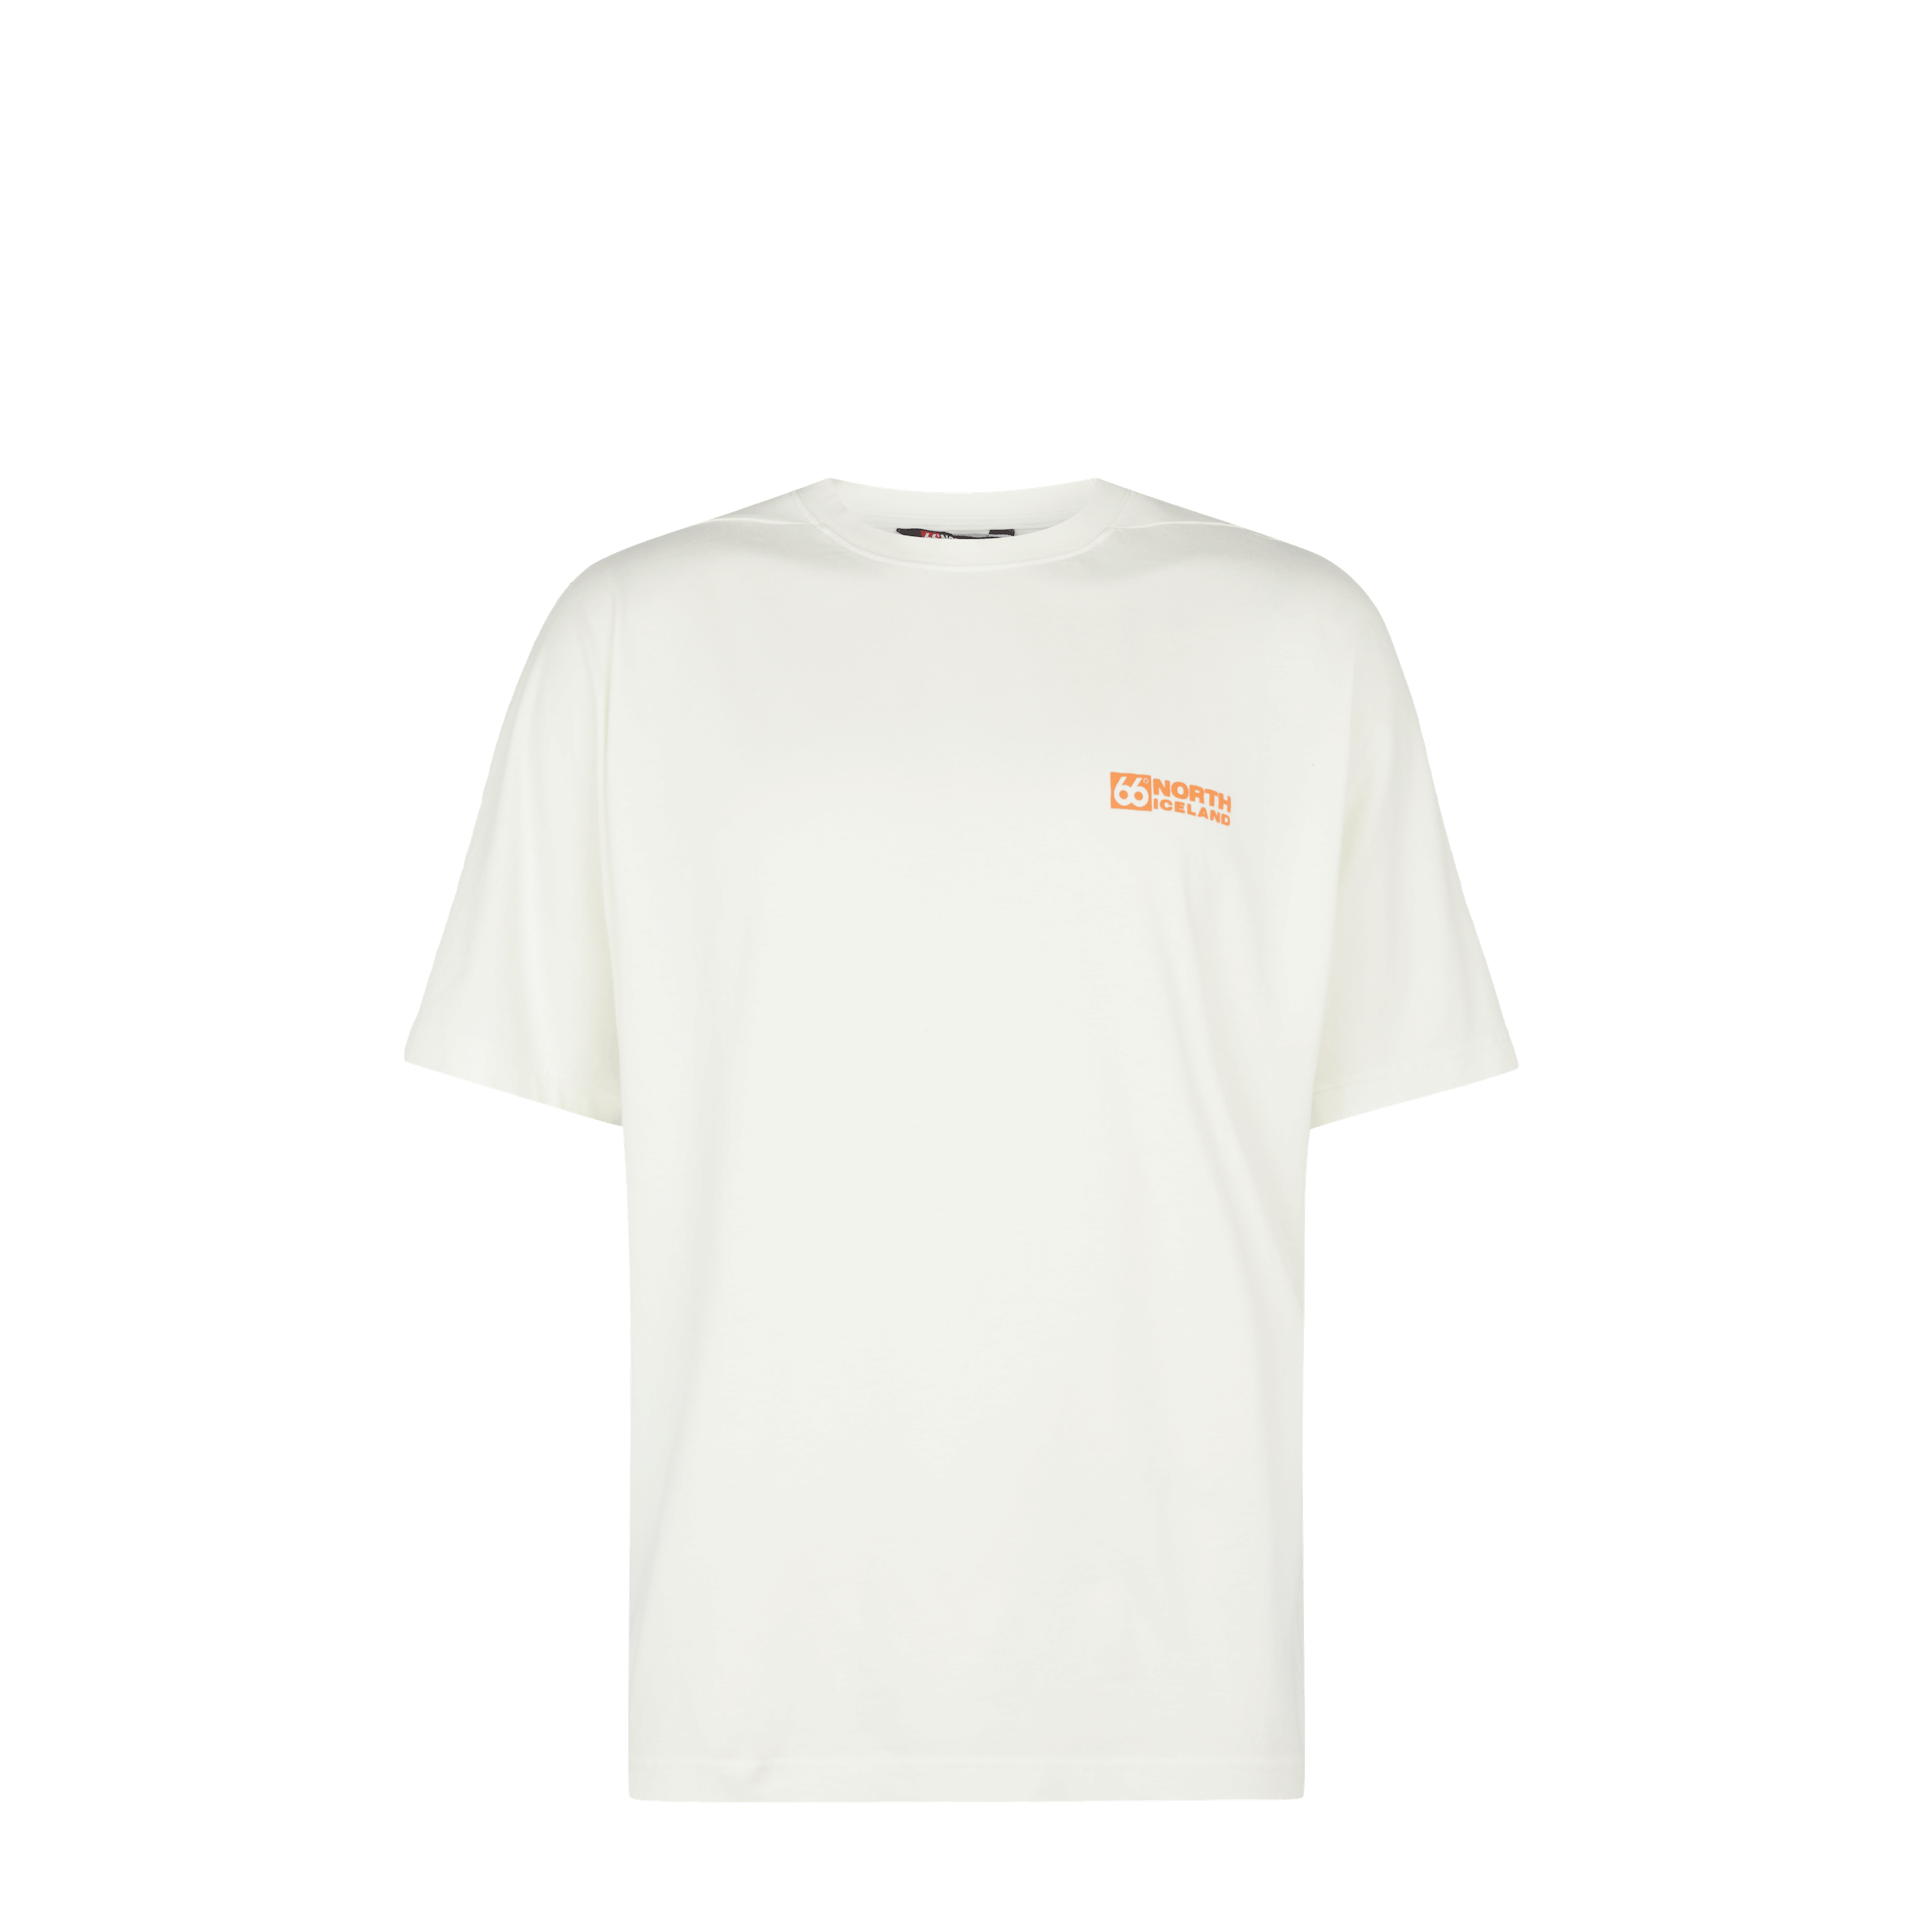 Sudureyri T-Shirt